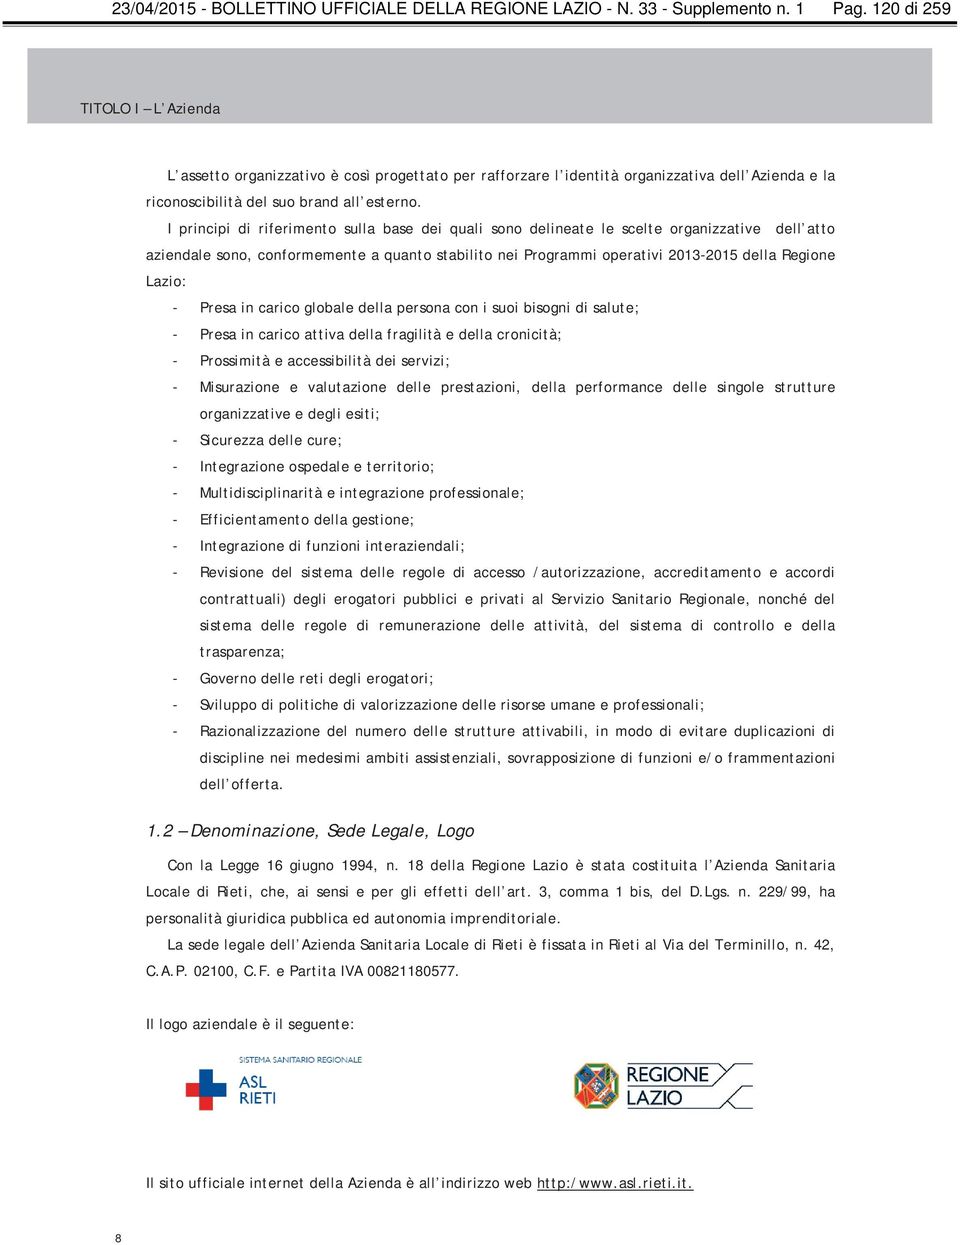 I principi di riferimento sulla base dei quali sono delineate le scelte organizzative dell atto aziendale sono, conformemente a quanto stabilito nei Programmi operativi 2013-2015 della Regione Lazio: